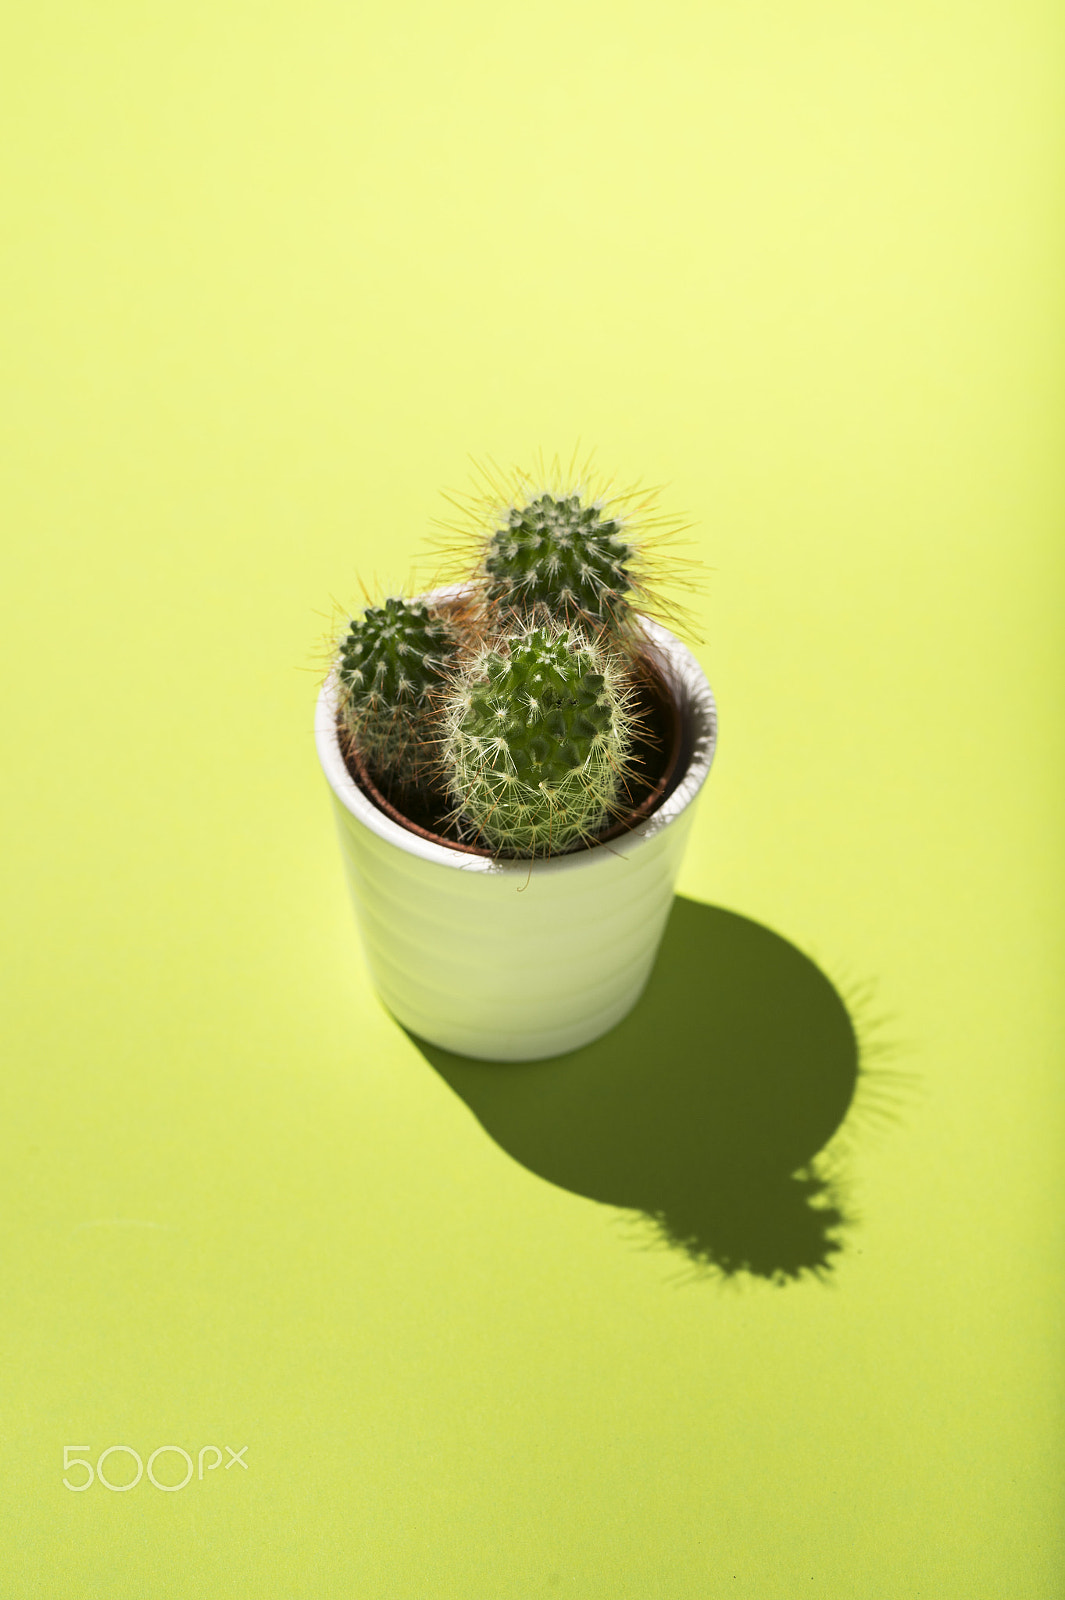 Nikon D4 sample photo. Sweet tiny cactus photography